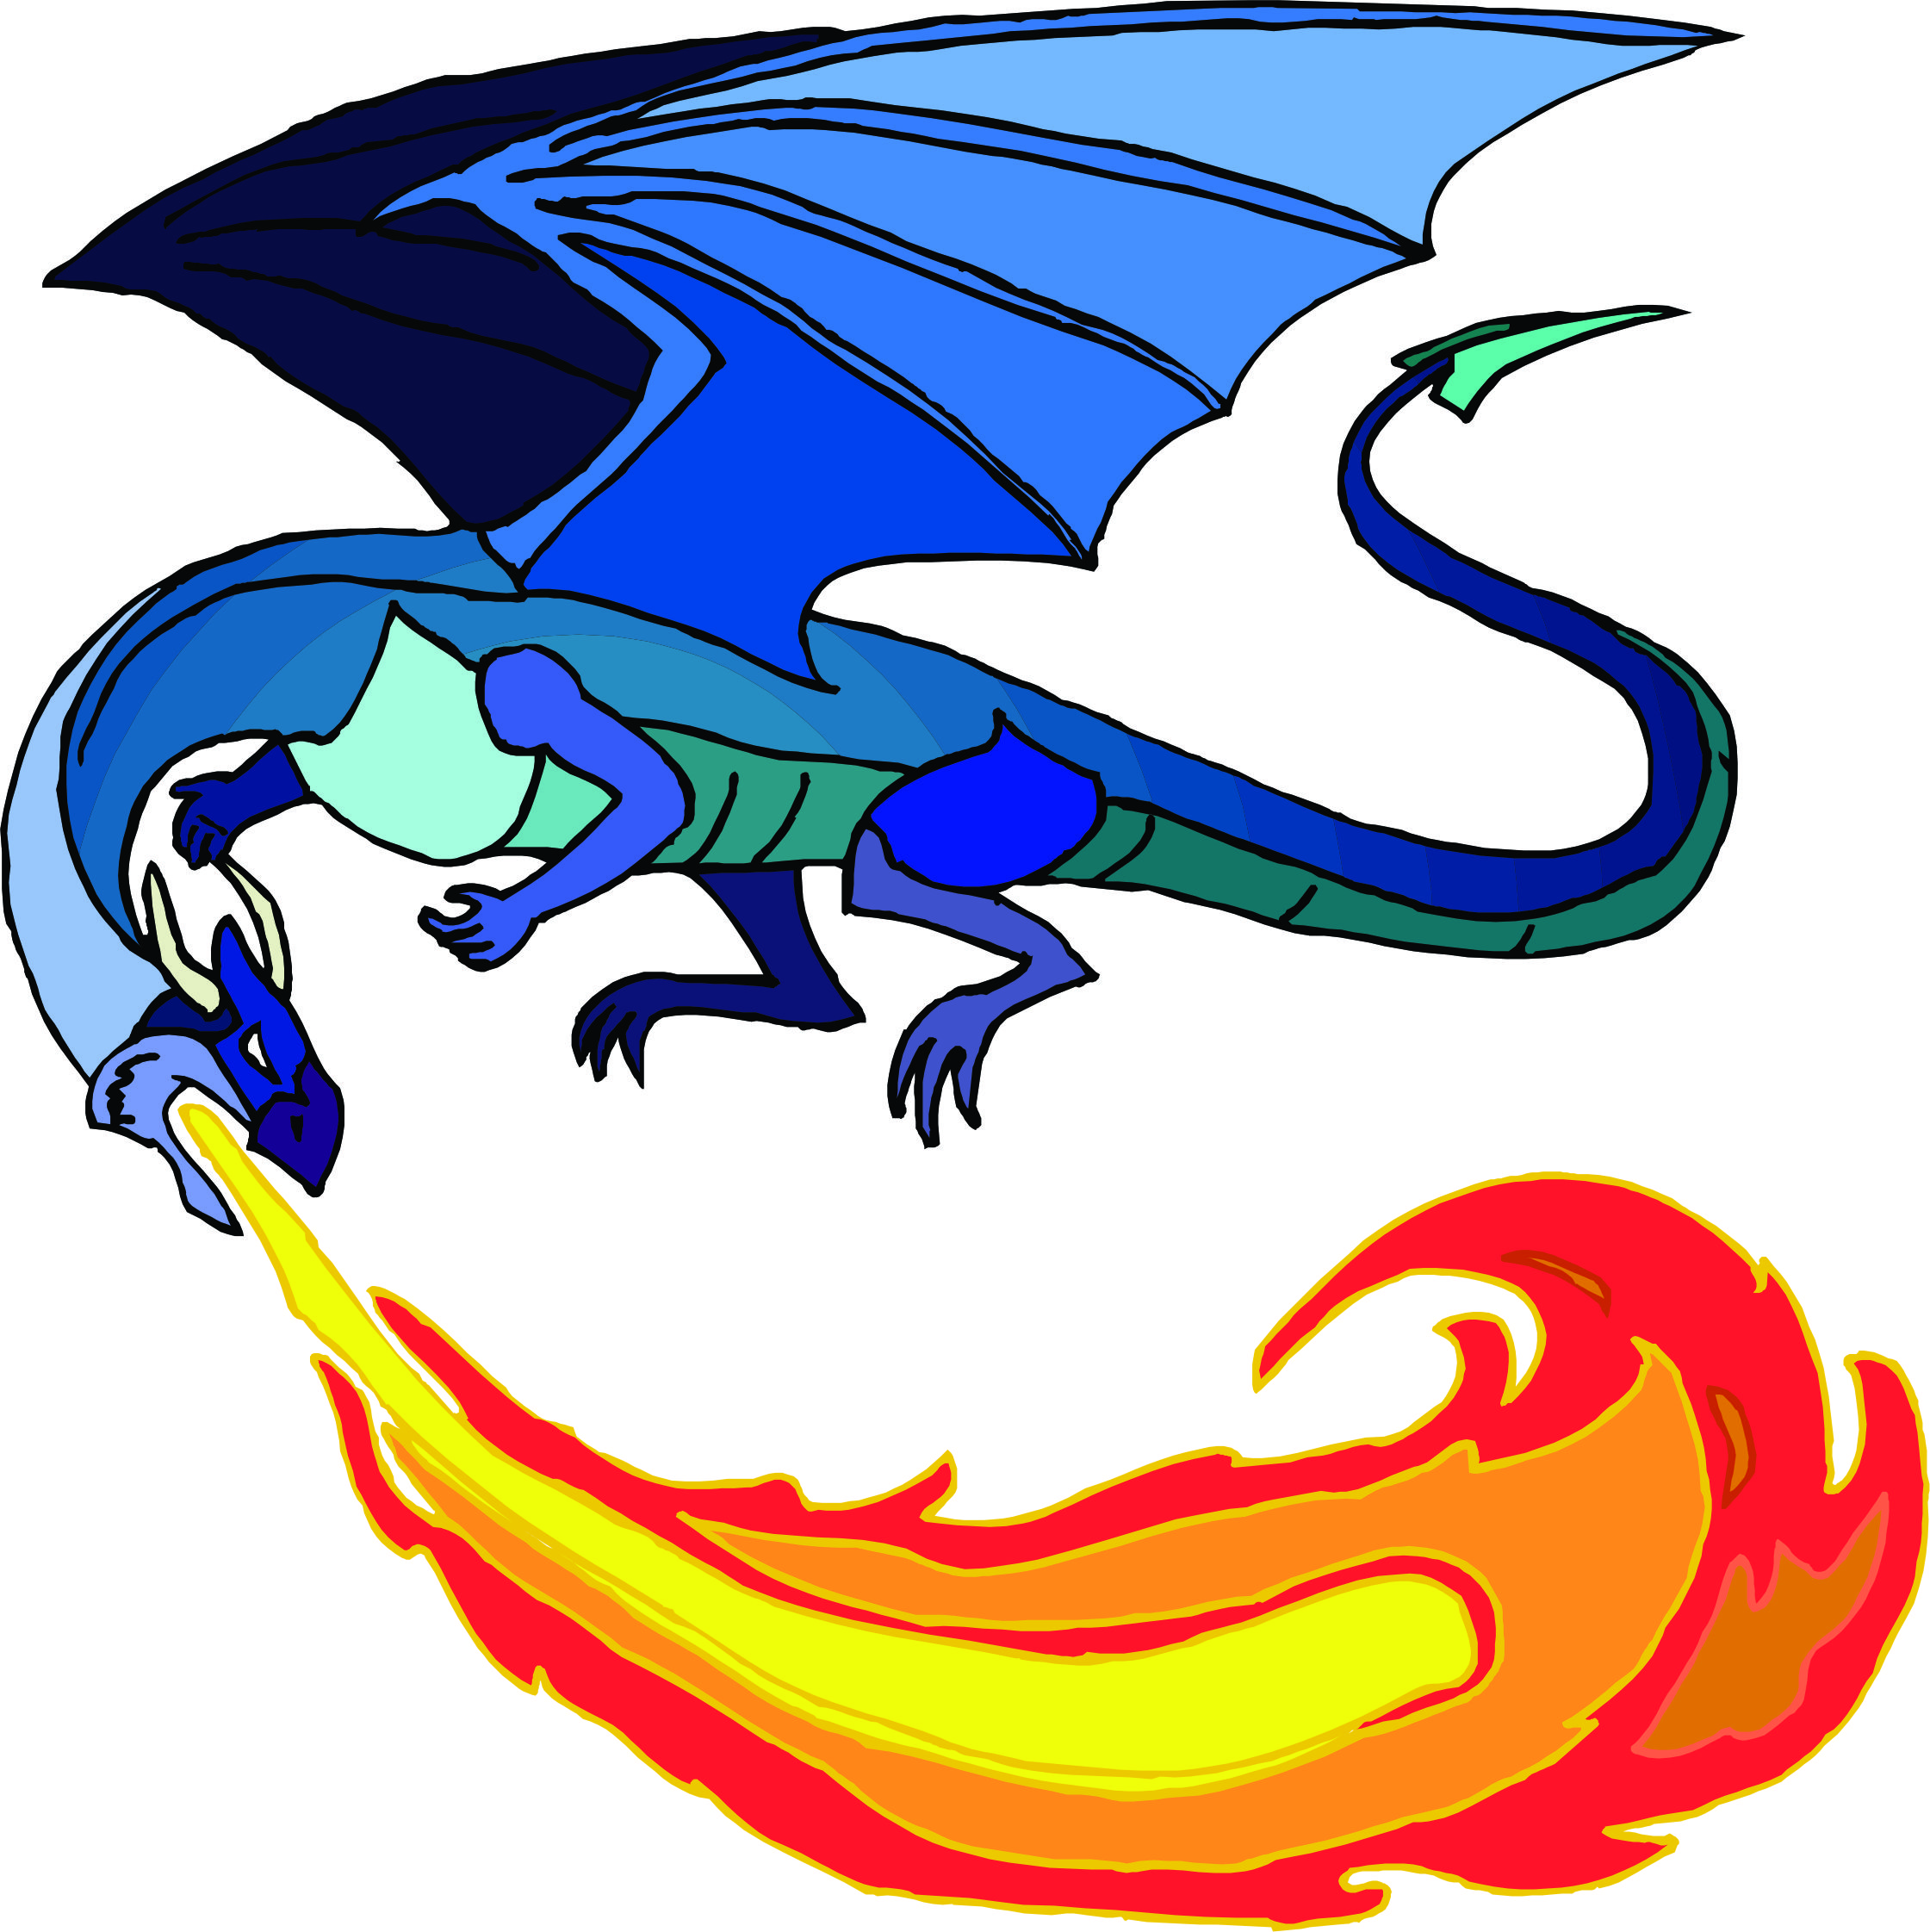 Cartoon Dragon Images | Free Download Clip Art | Free Clip Art ...